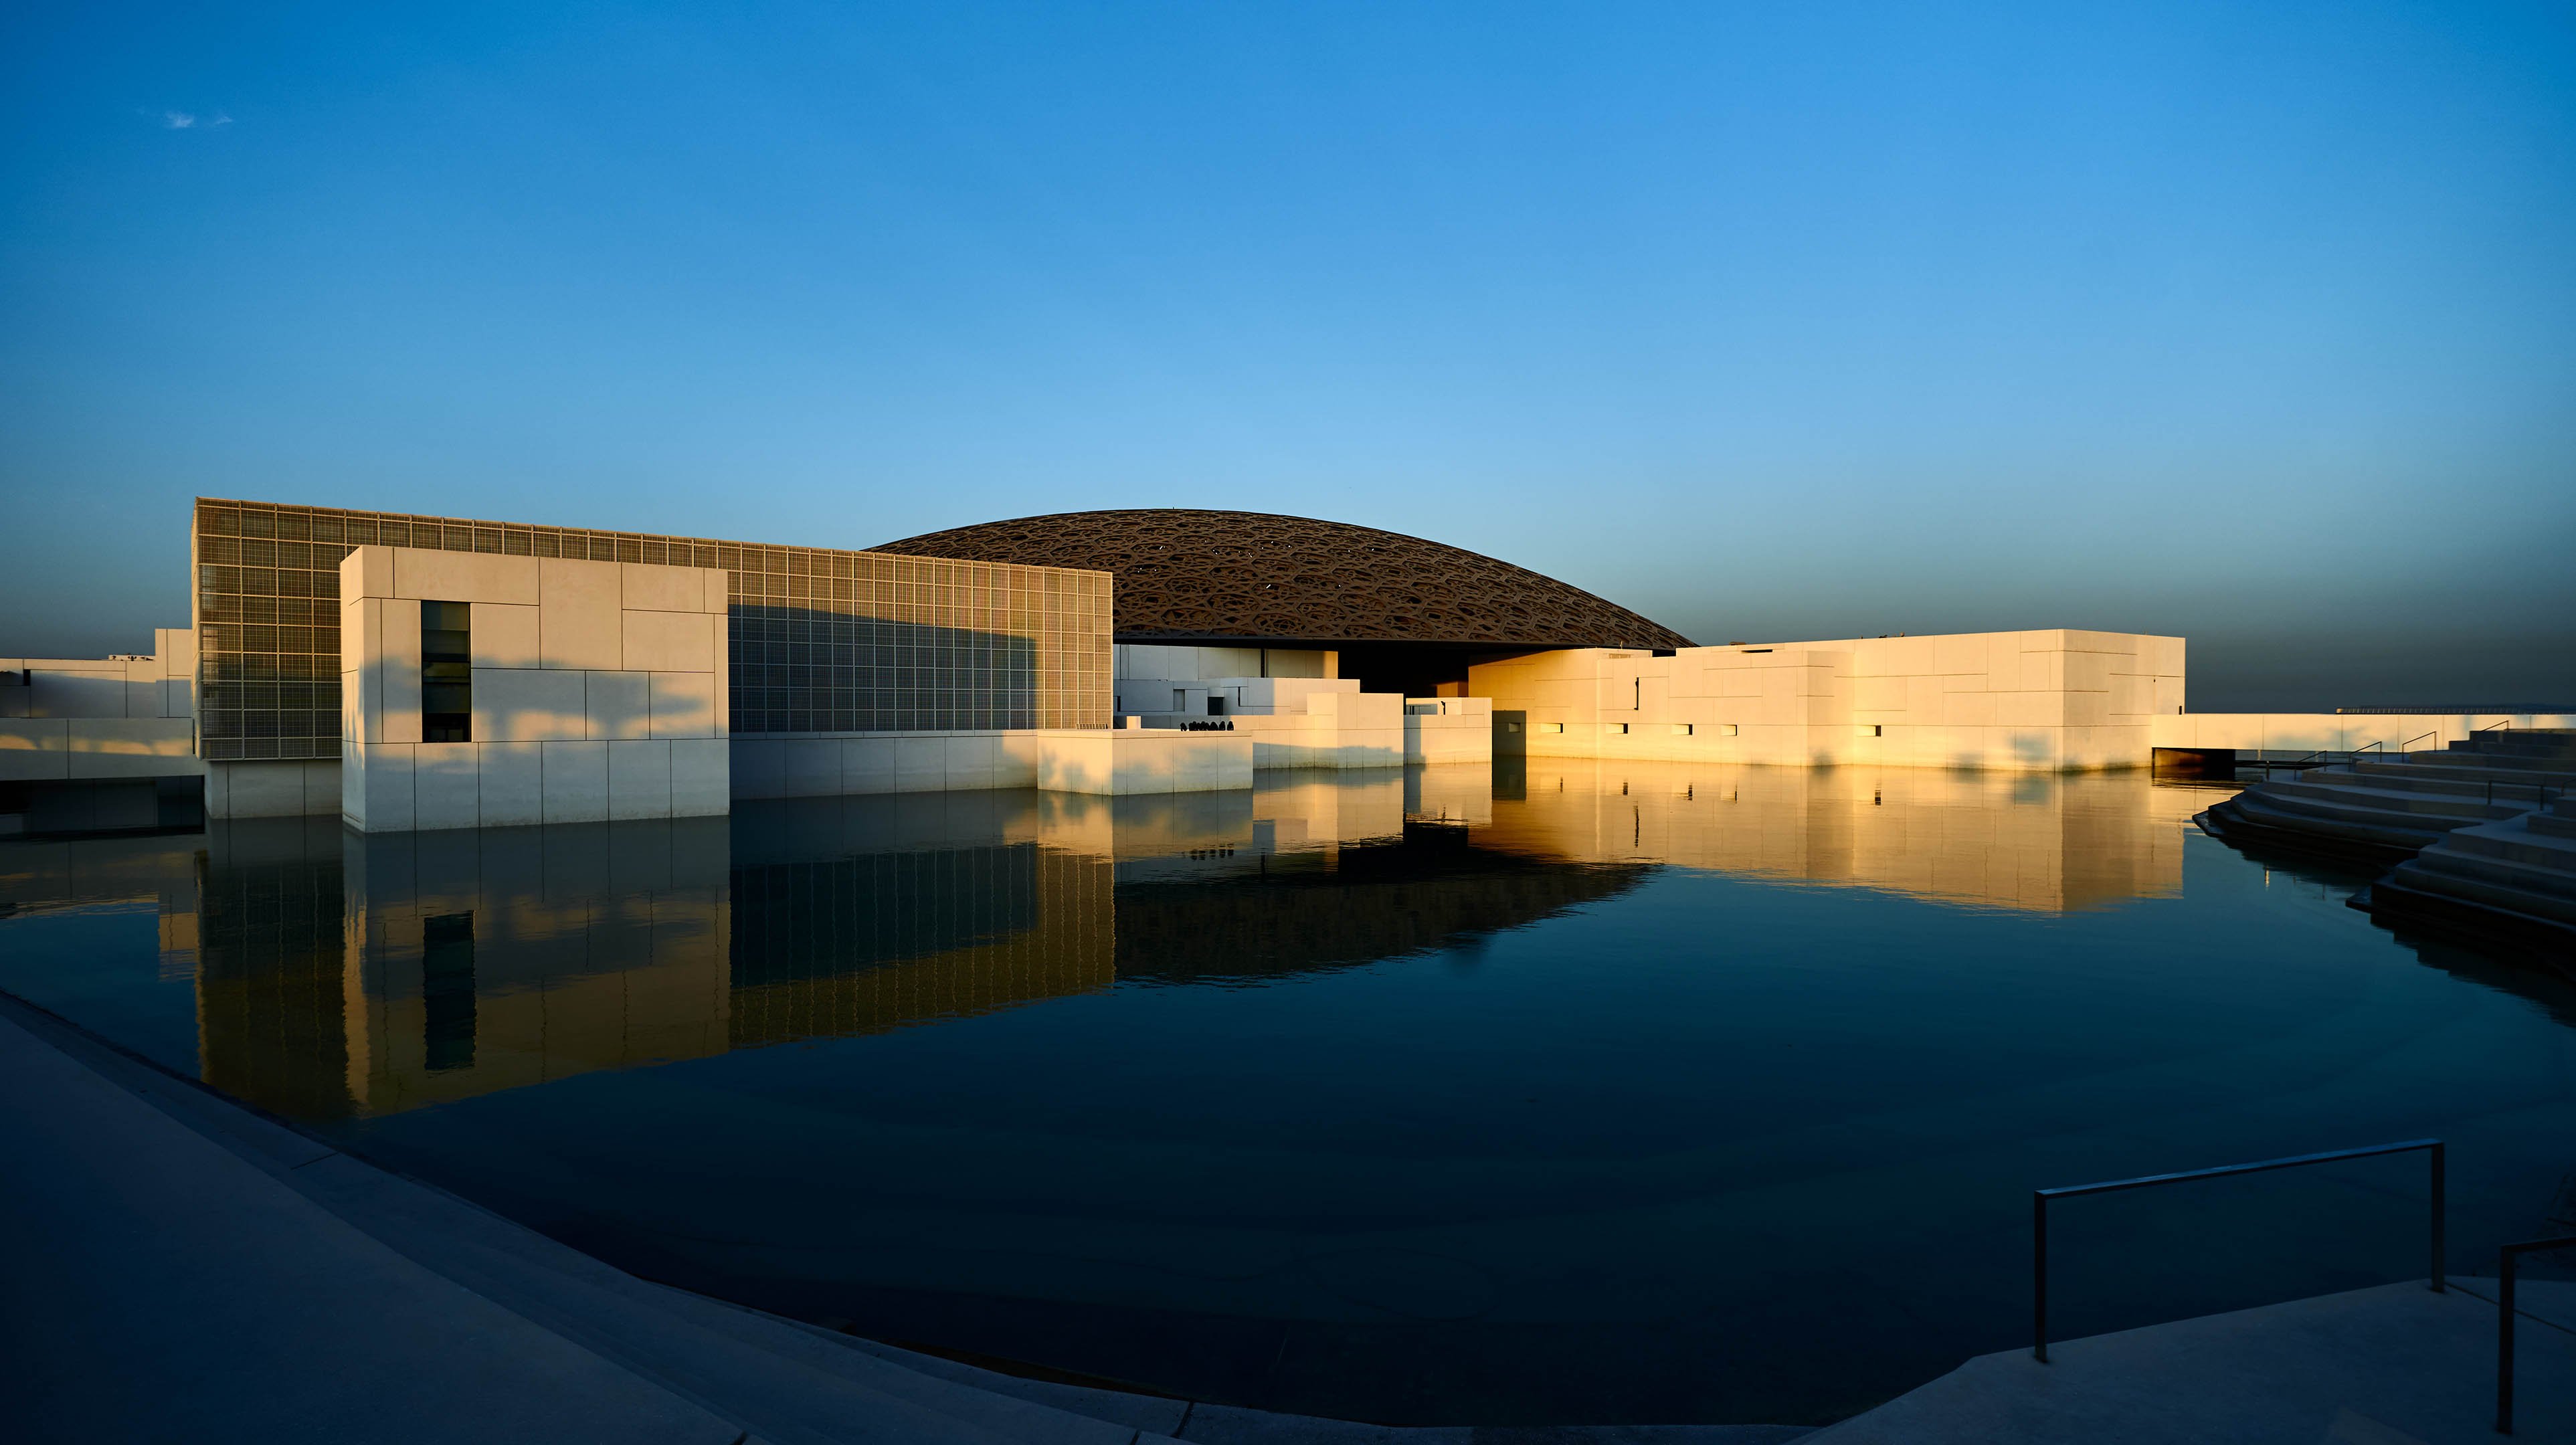 لقطة من الأعلى لمتحف اللوفر أبوظبي أثناء النهار